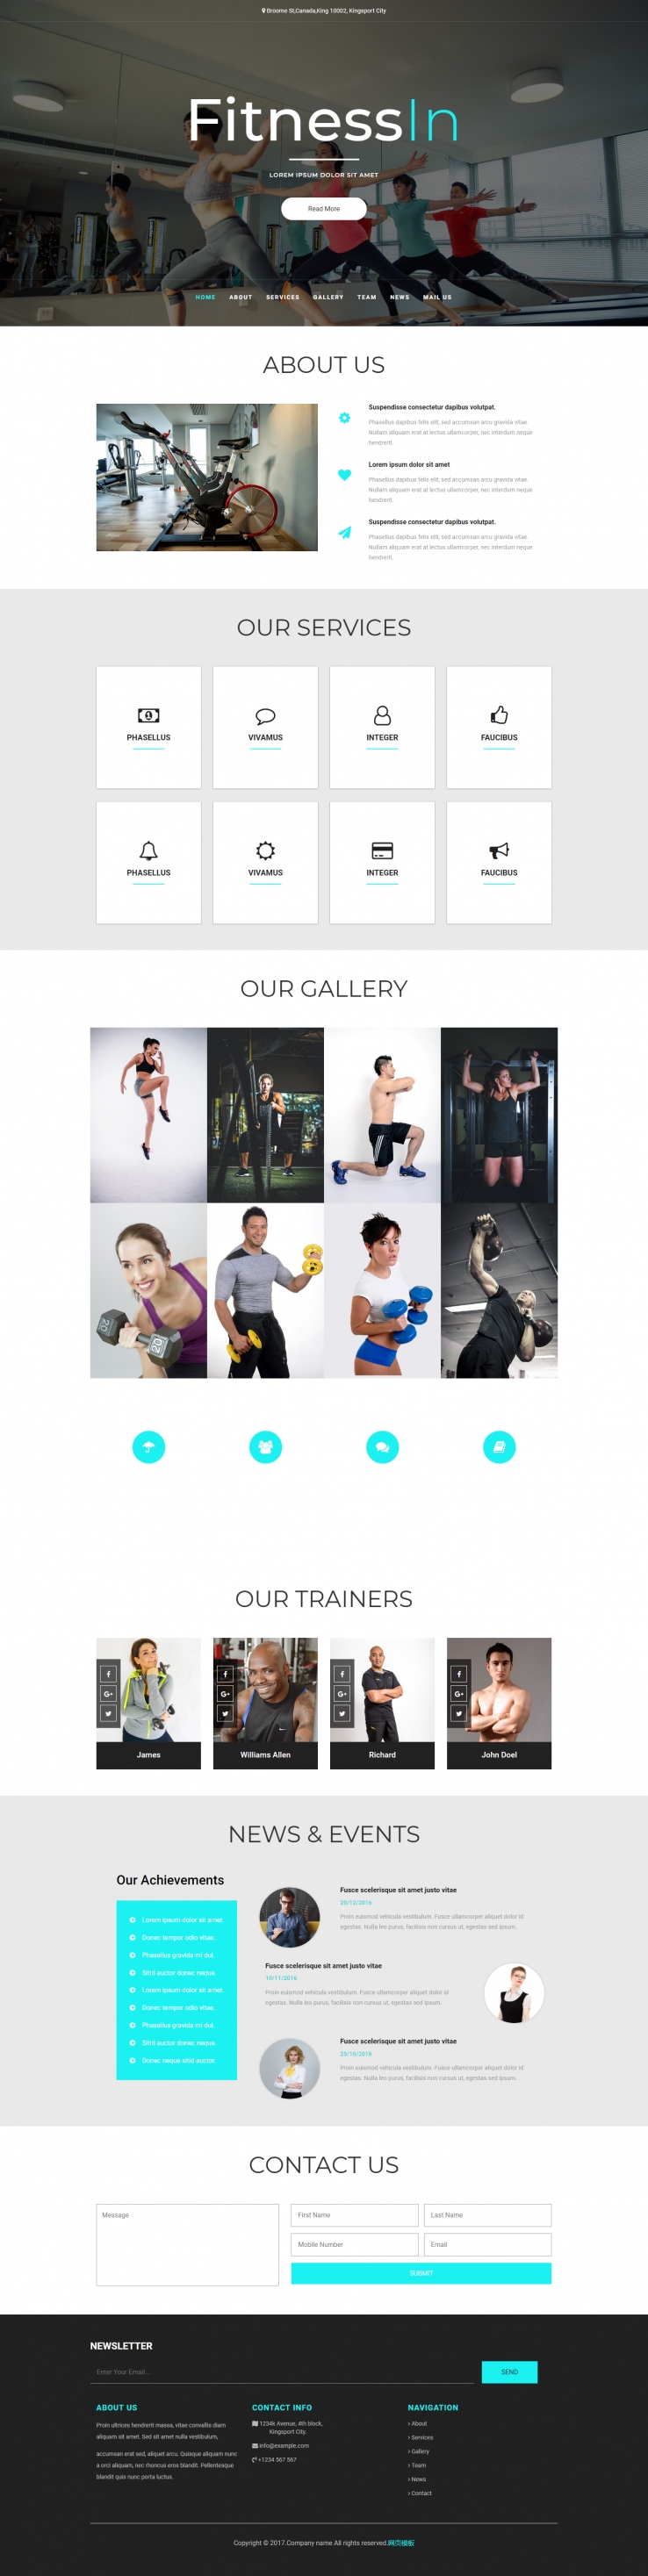 黑色宽屏风格运动健身企业网站模板